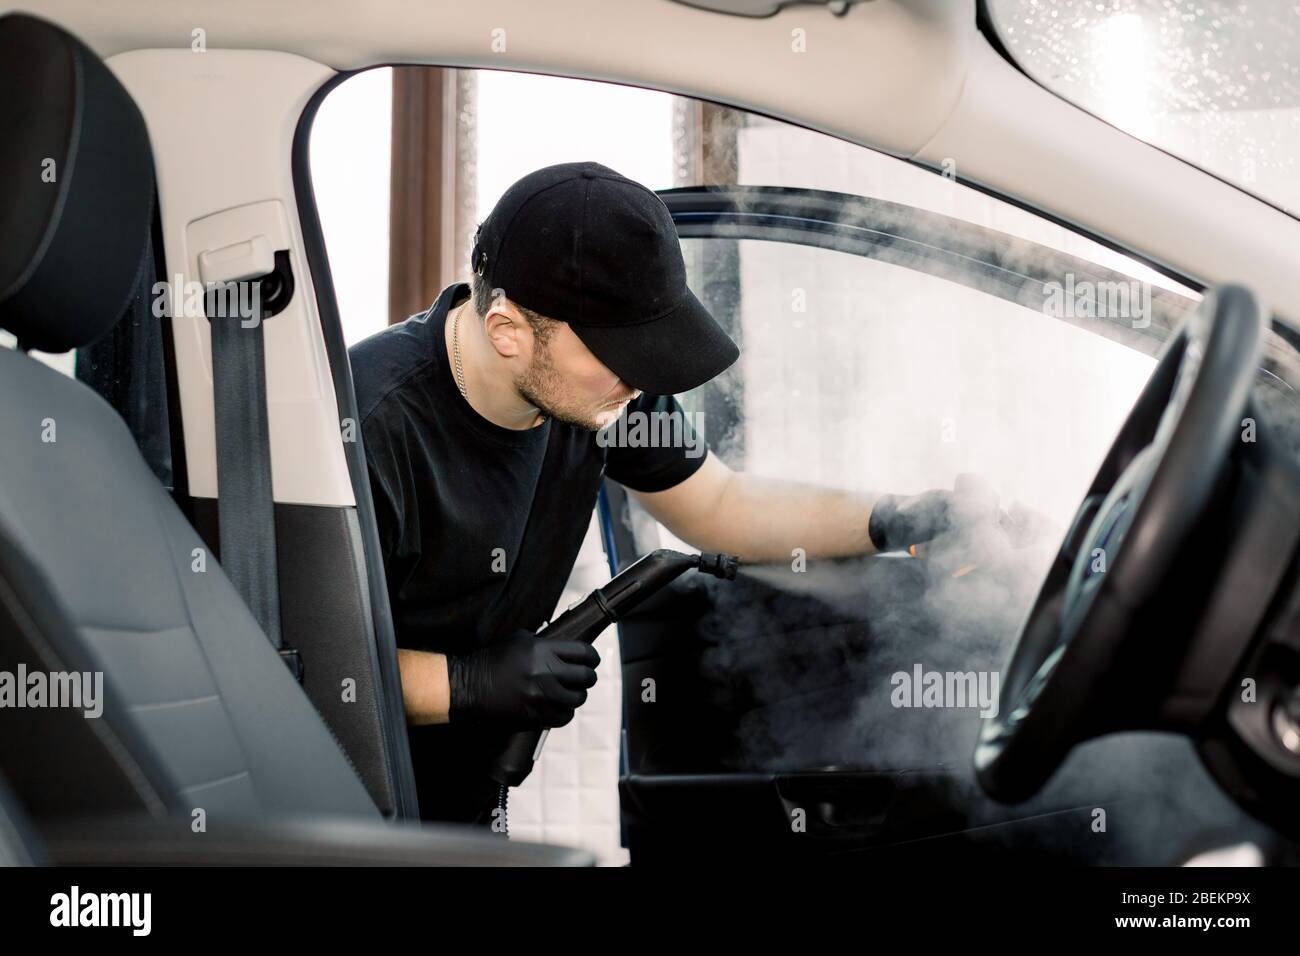 Auto-Reinigungsservice und Detaillierung Konzept. Schöner kaukasischer Mann  in schwarz einheitliche Reinigung Innenraum des Autos mit heißem  Dampfreiniger. Selektiv Stockfotografie - Alamy